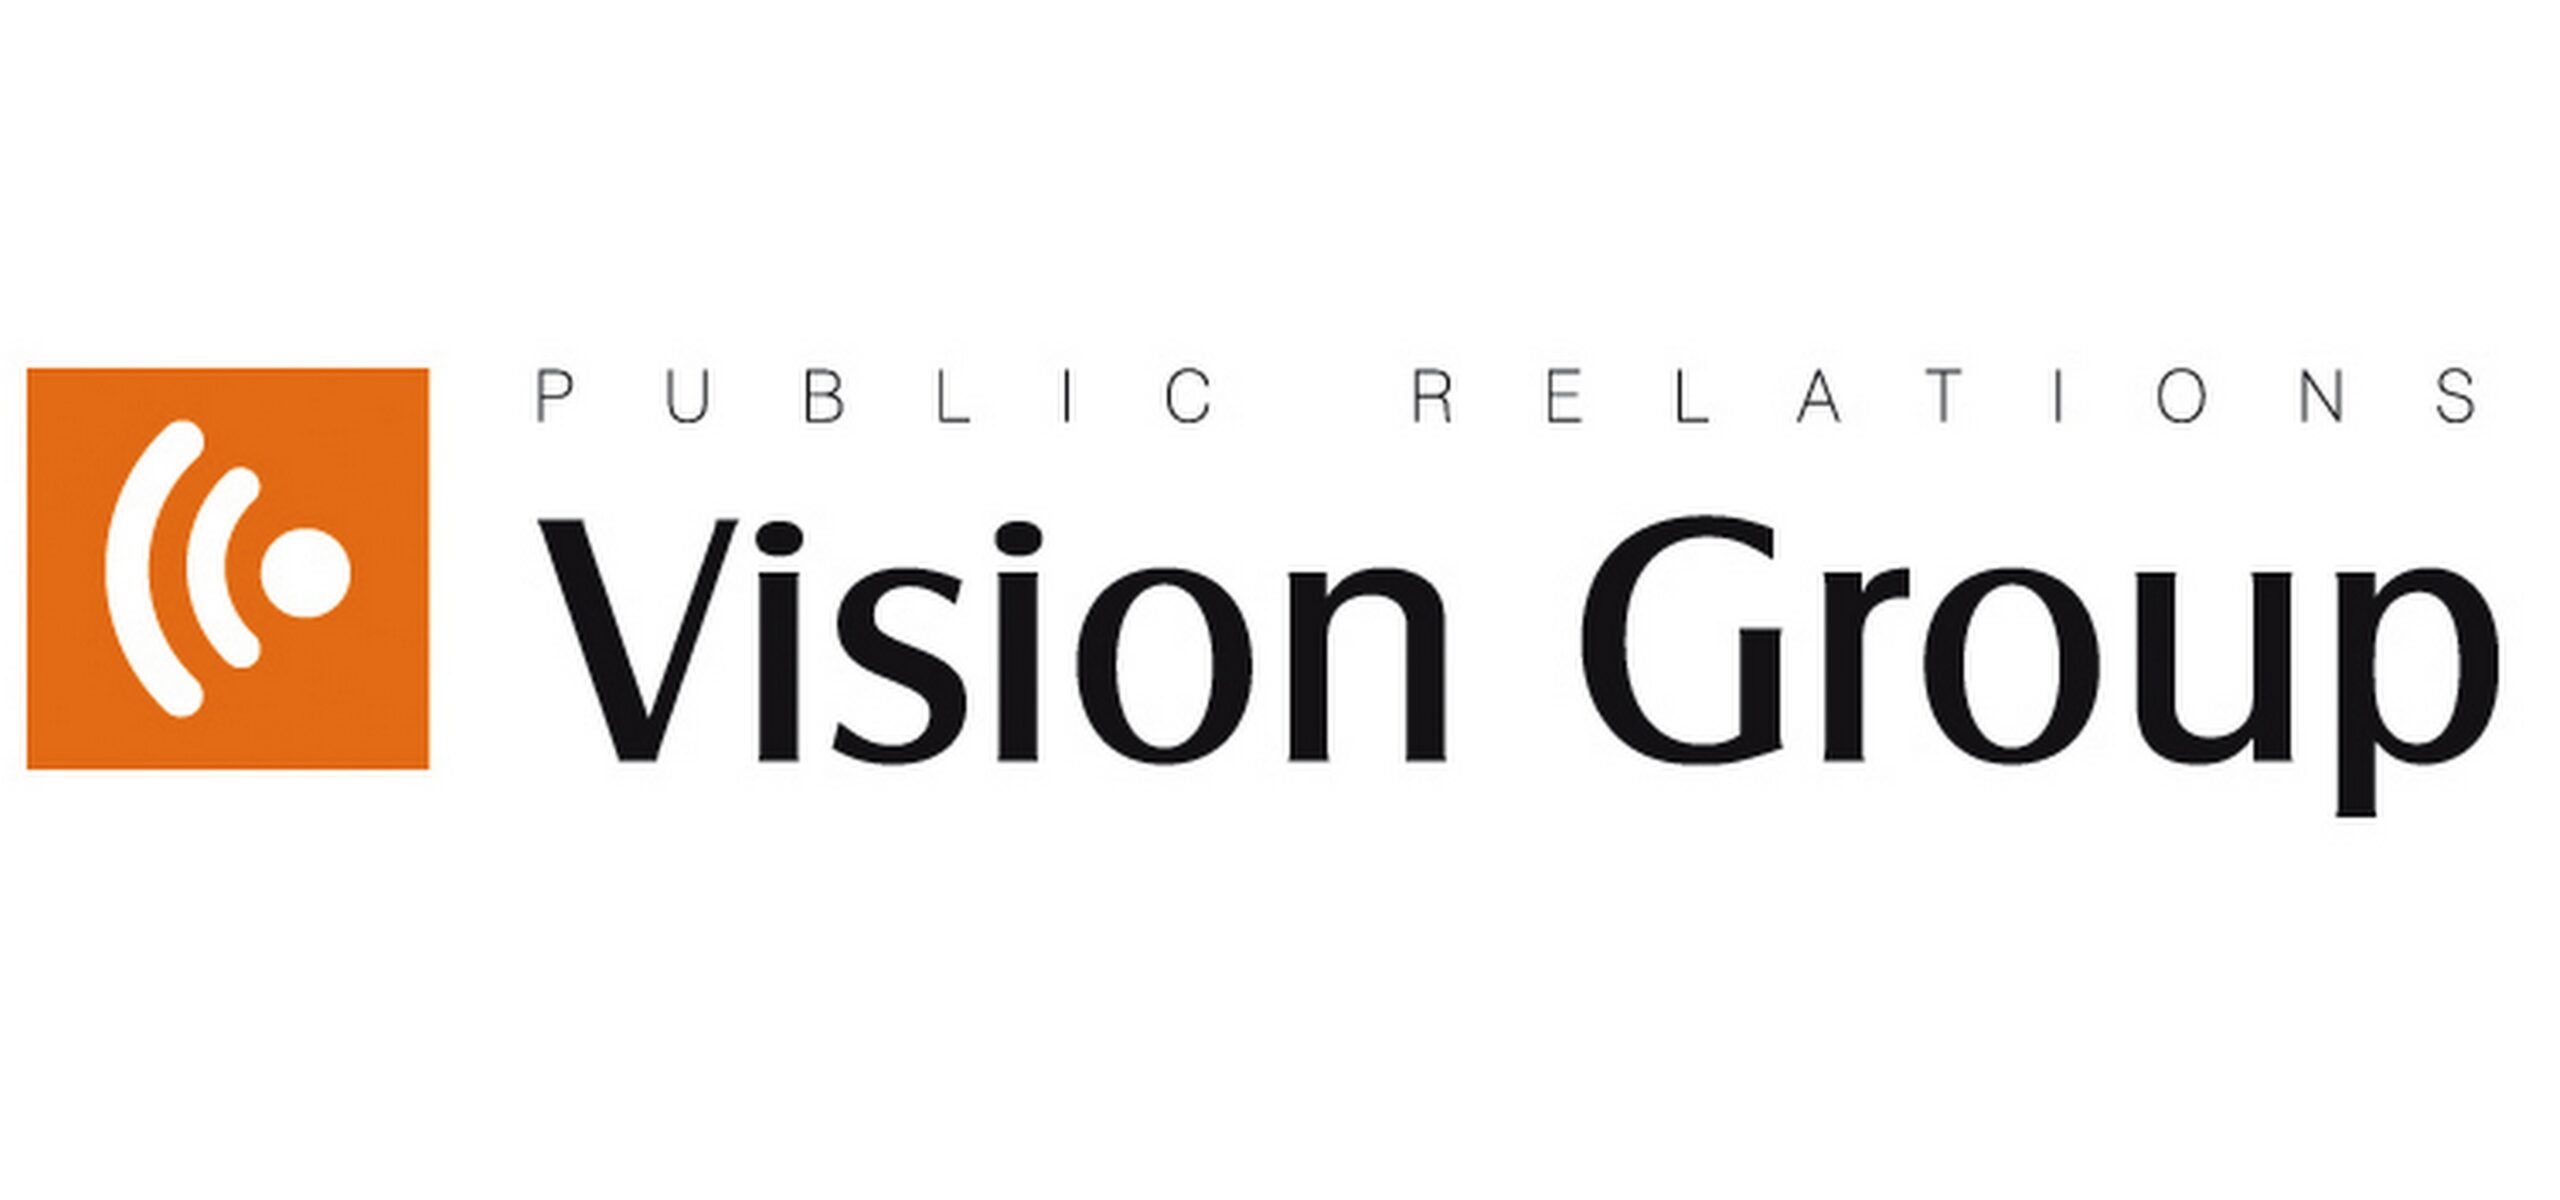 CUK Ubezpieczenia we współpracy z Vision Group Vision Group Mediarun Com Vision Group scaled